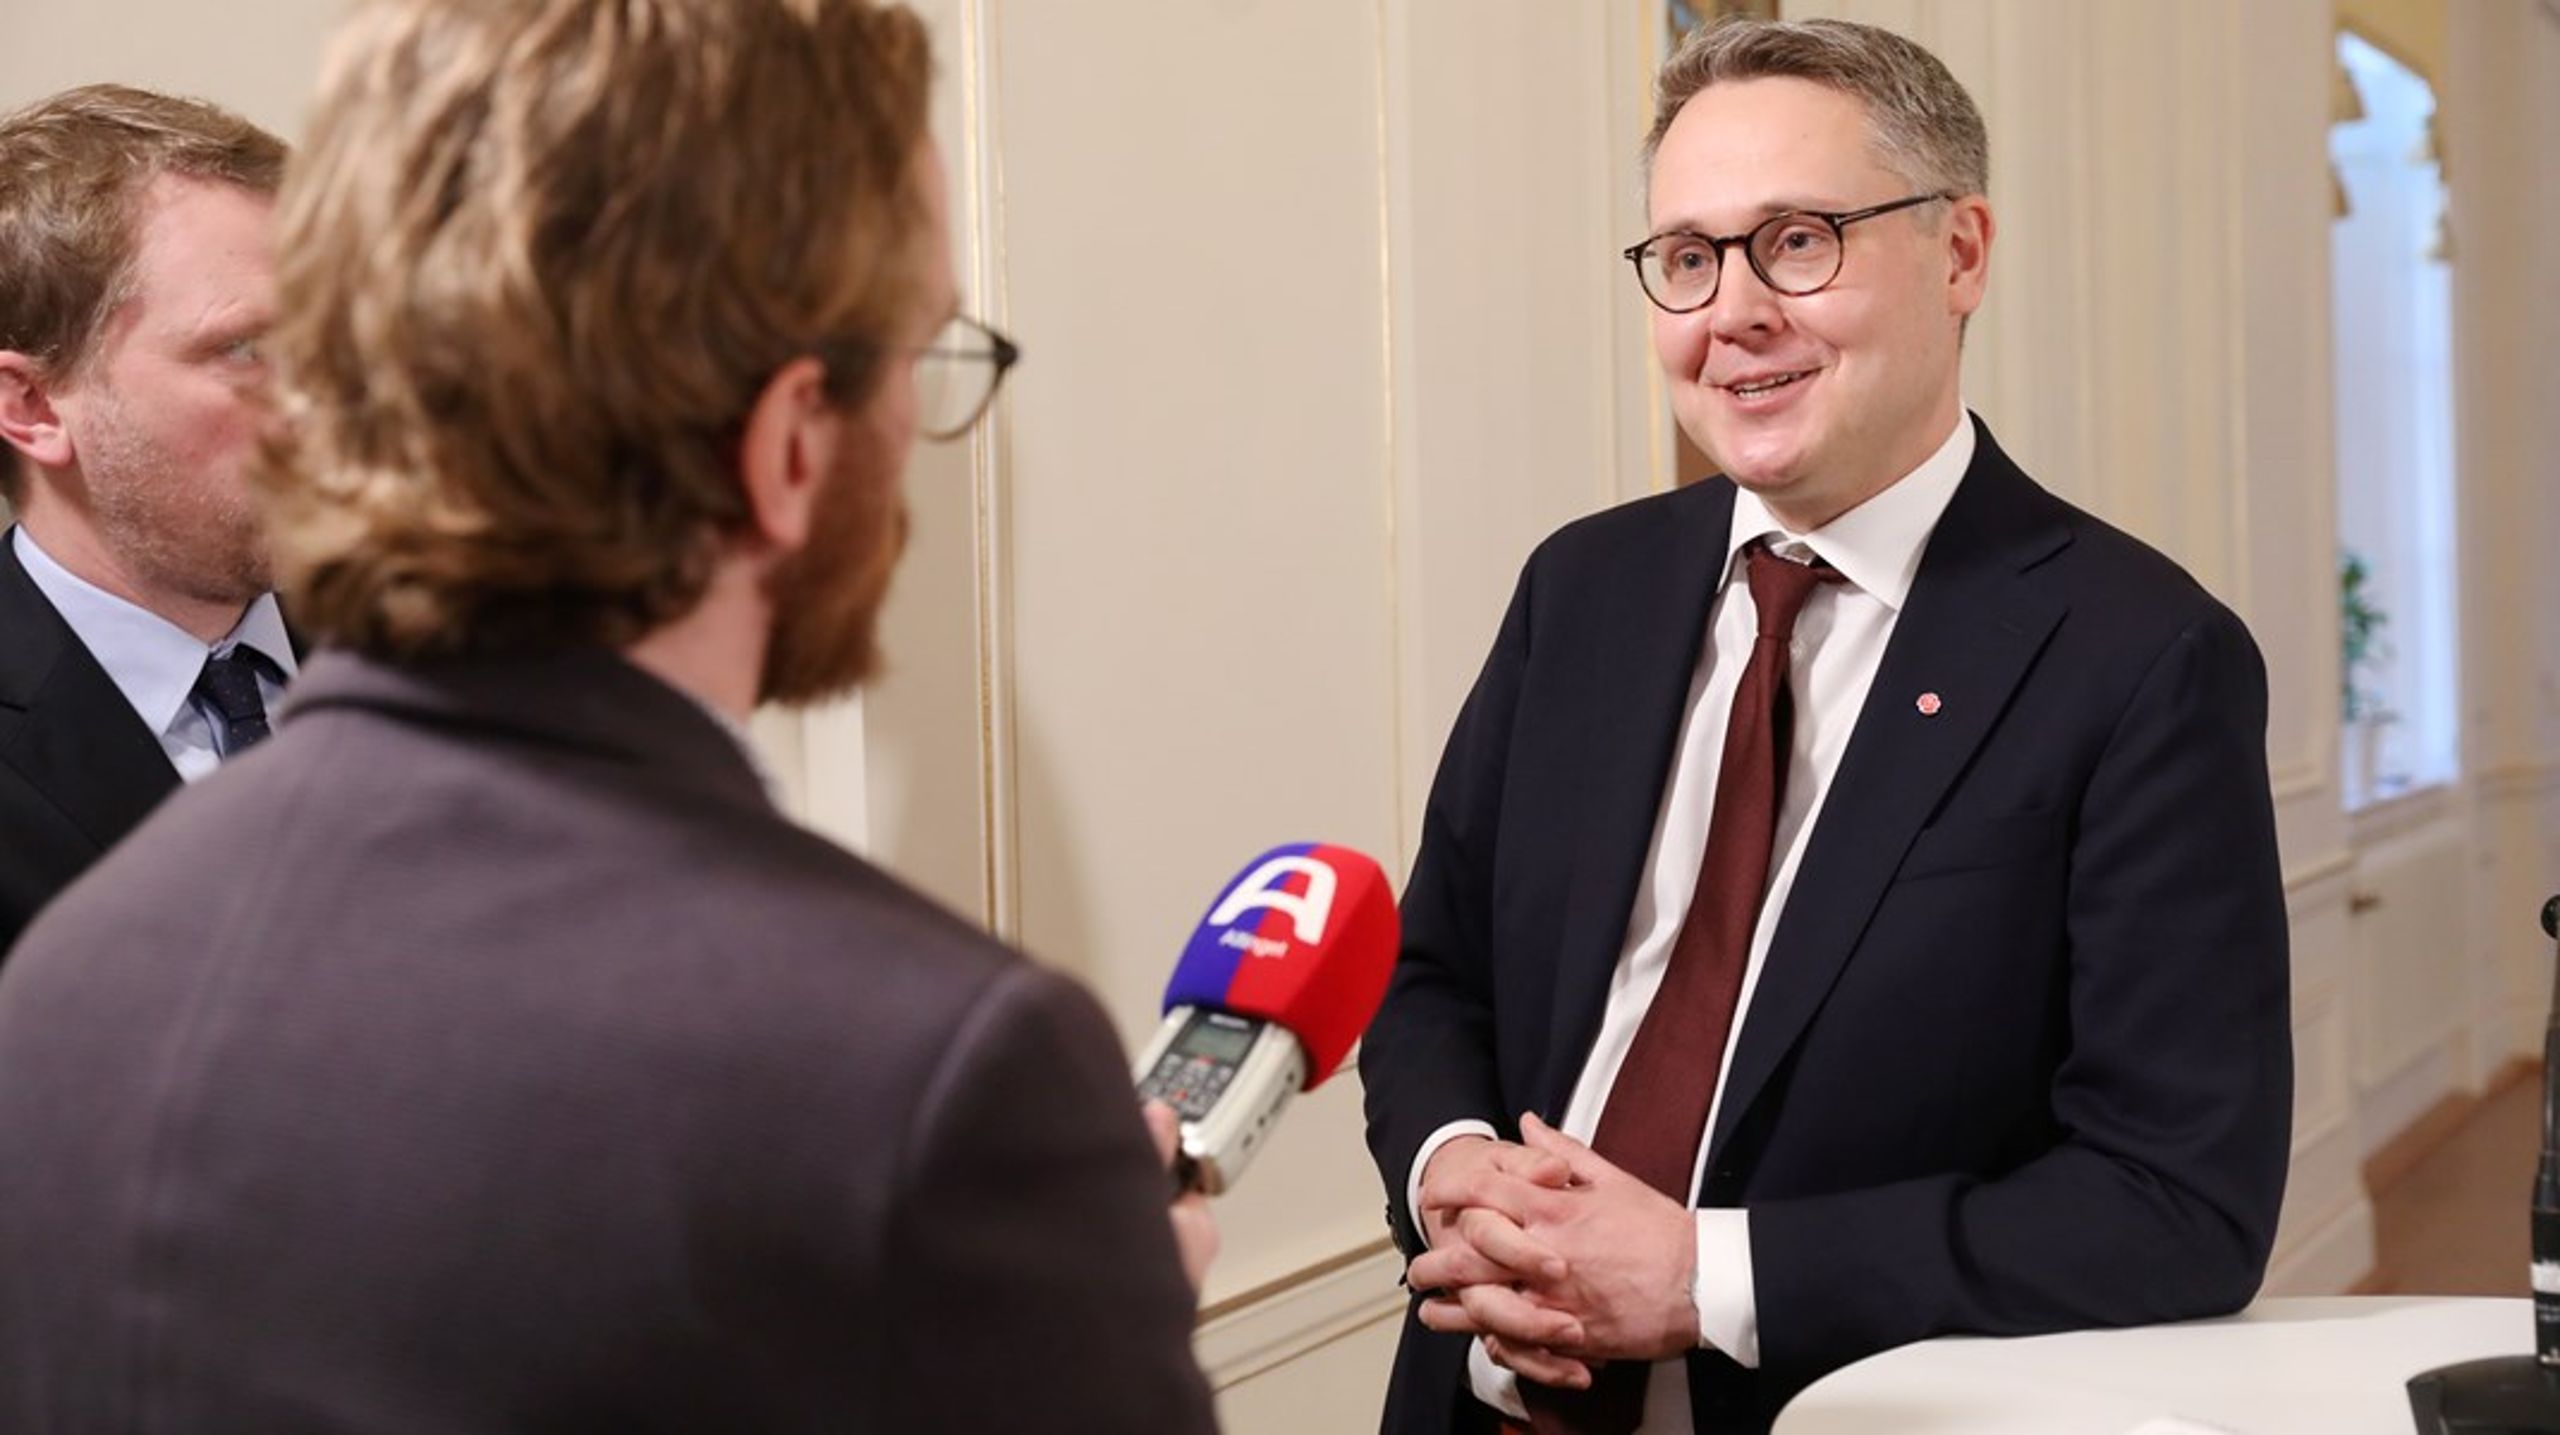 Johan Danielsson (S) intervjuas av Altinget i samband med presentationen av regeringens nya ministrar.